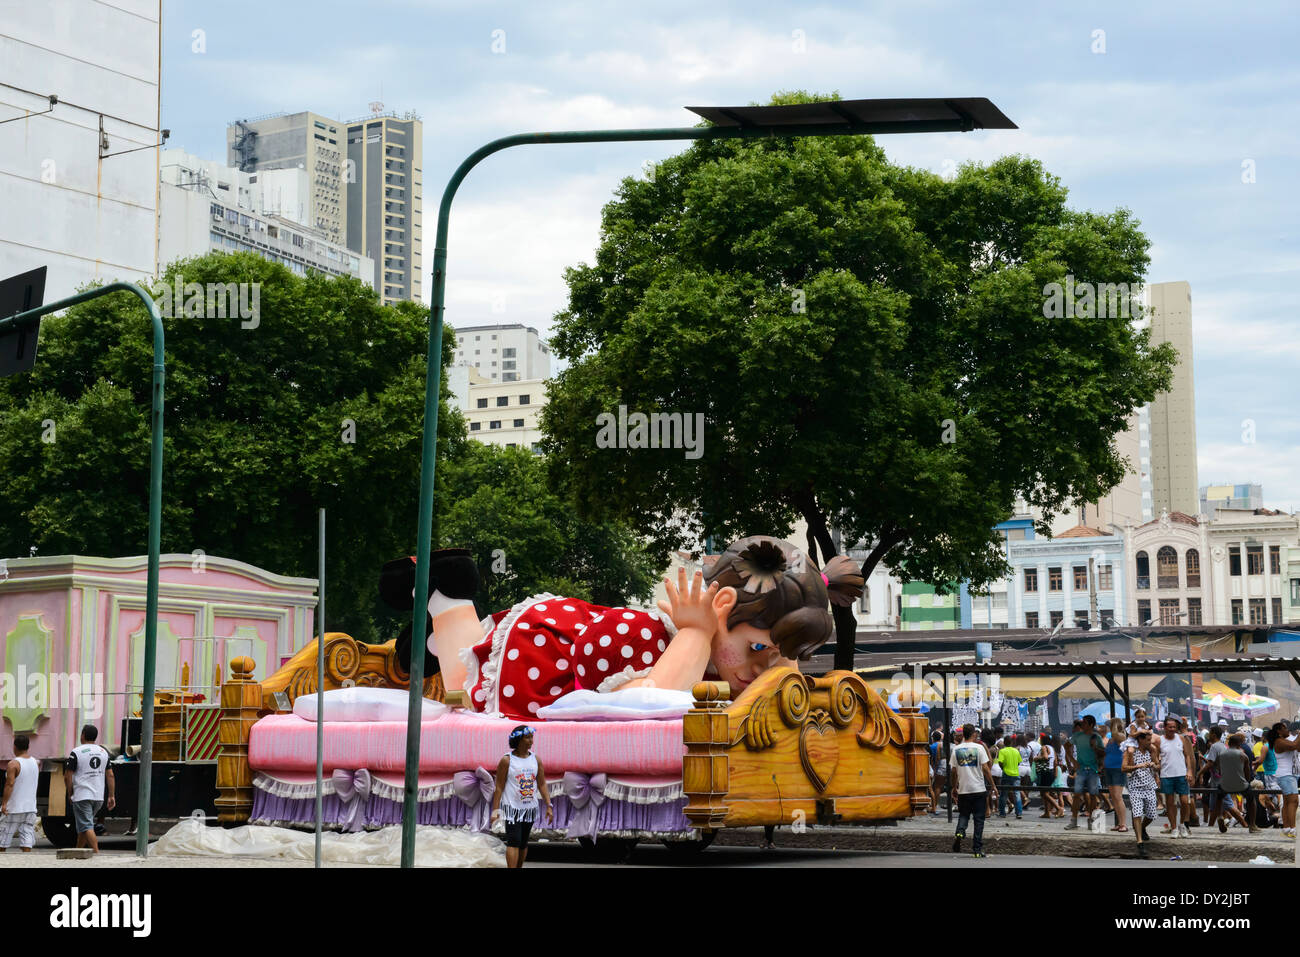 Flotteur de Carnival girl en robe rouge à pois lying on bed, en stationnement sur rue, Rio de Janeiro Banque D'Images